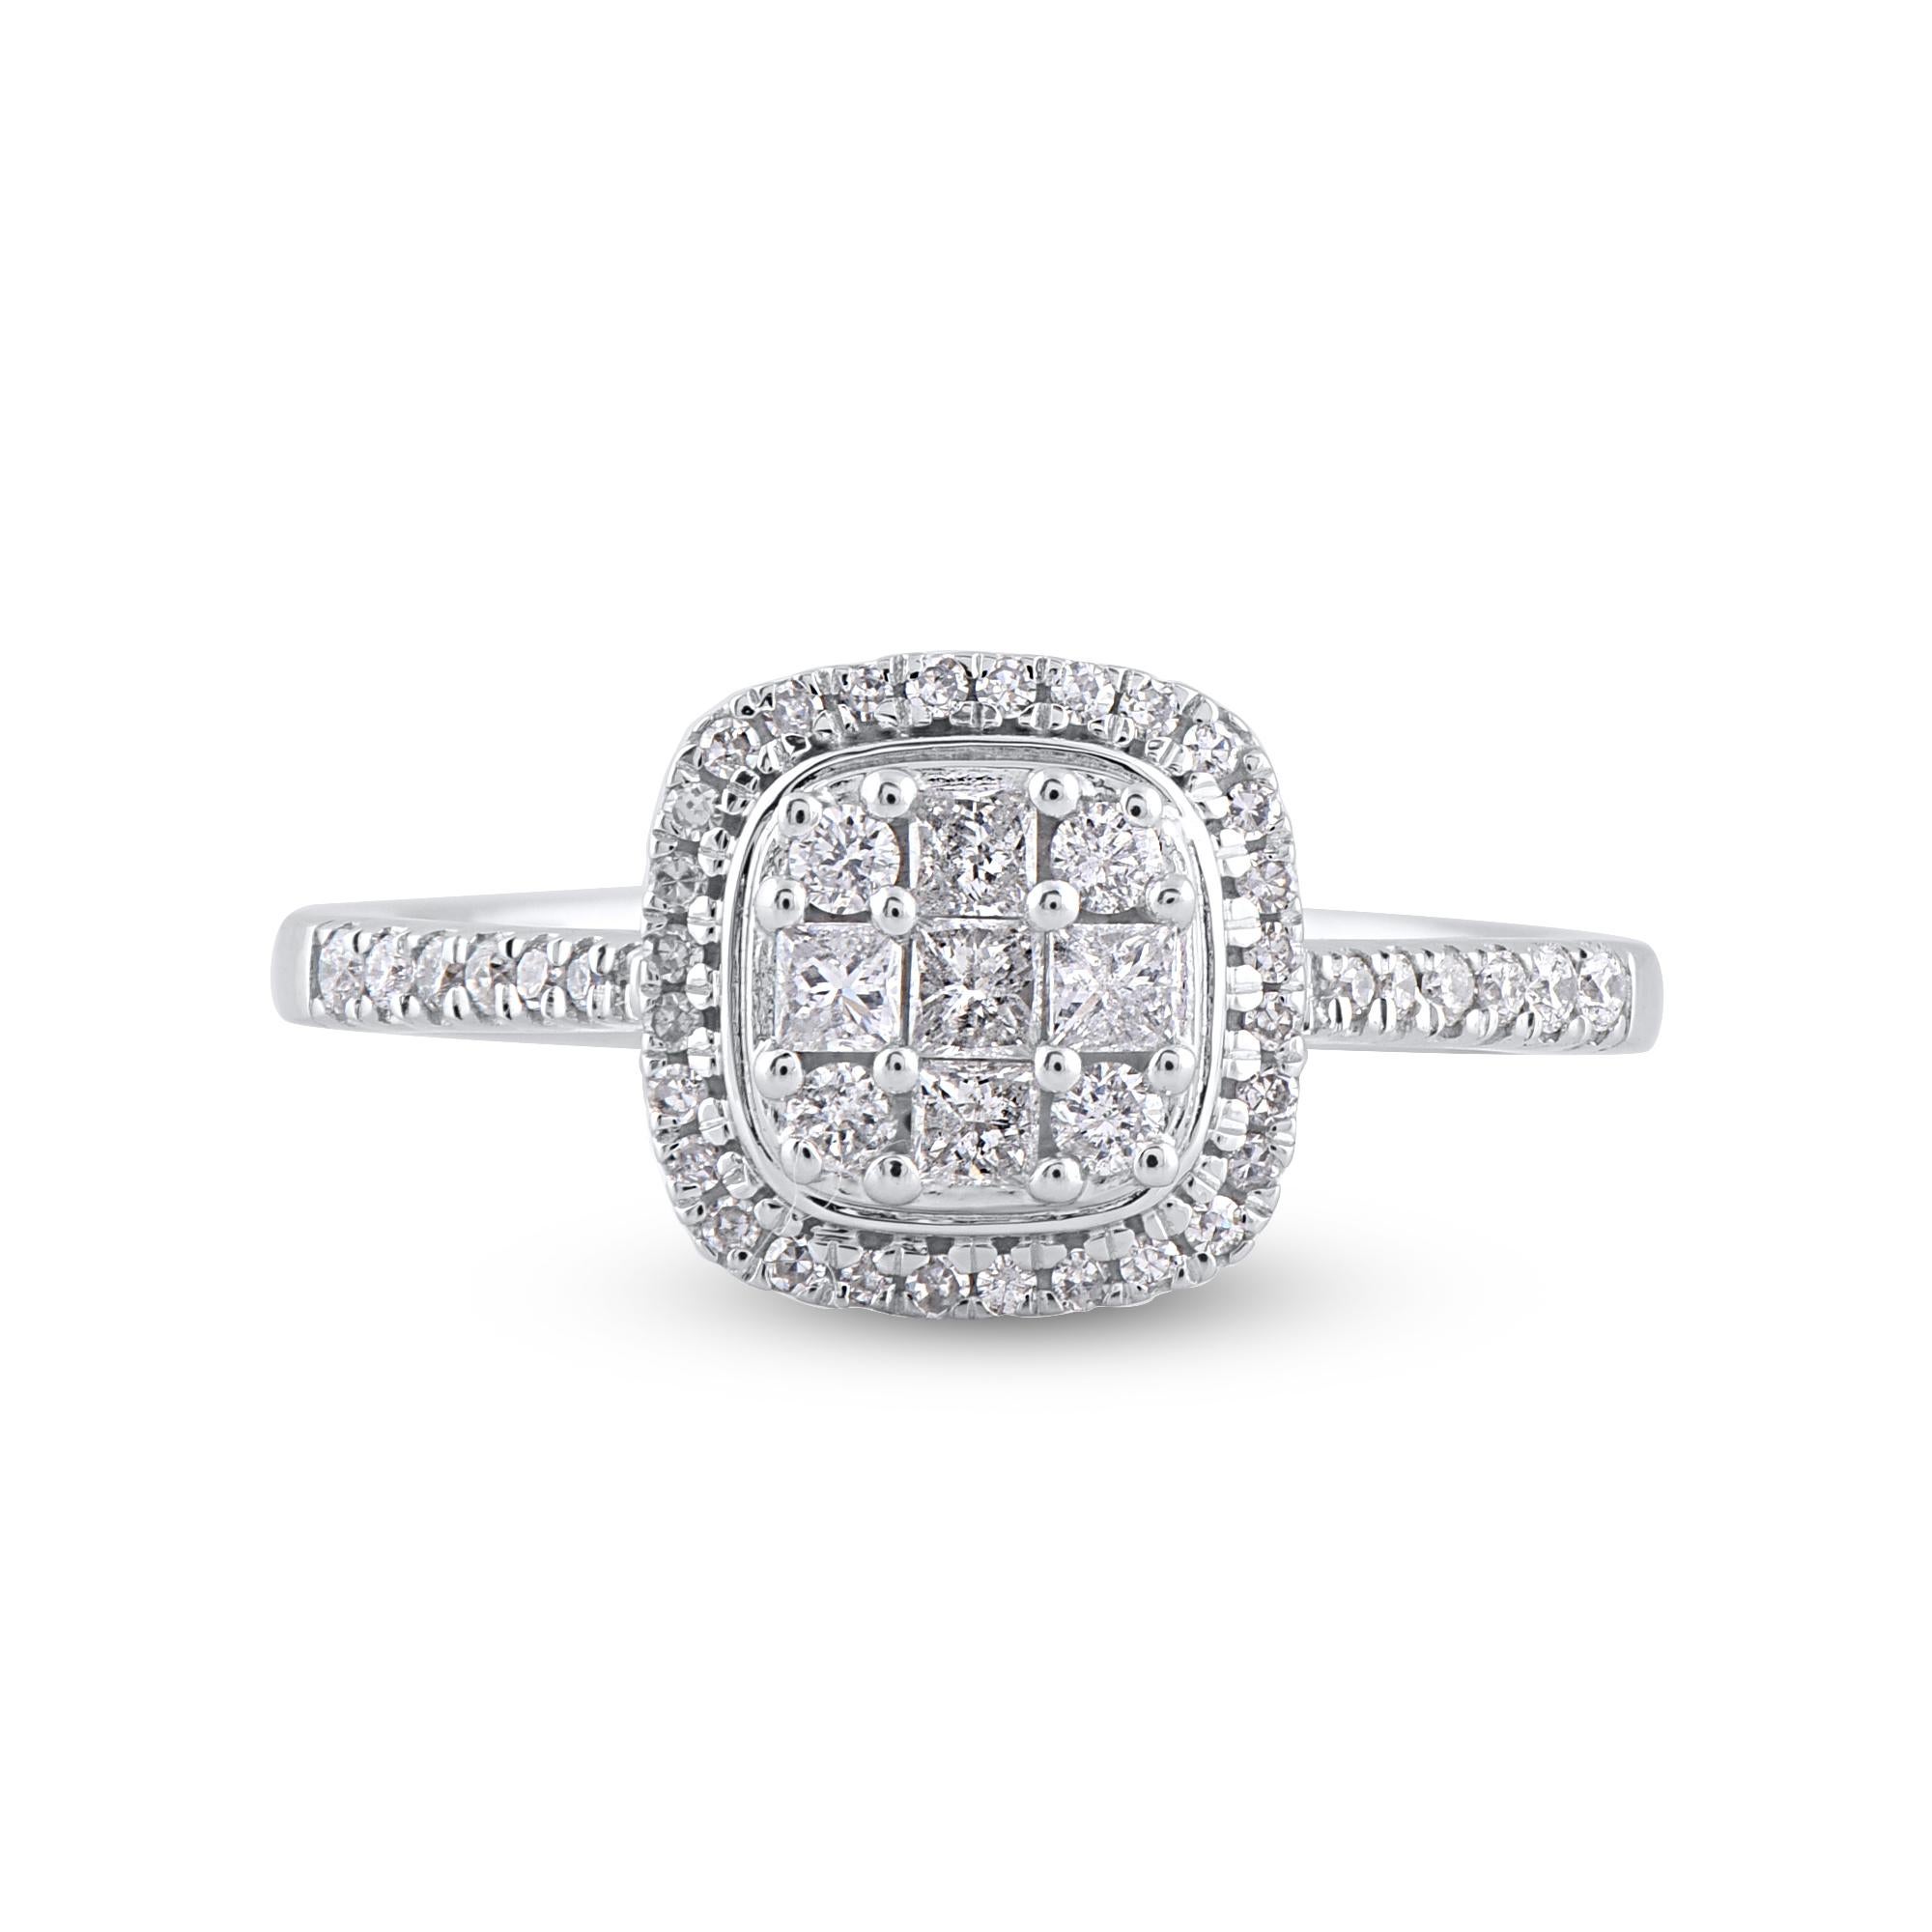 Die Verlobung ist einer der schönsten und denkwürdigsten Momente im Leben. Und der perfekte Ring ist die Kirsche auf dem Sahnehäubchen! Dieser Verlobungsring ist fachmännisch aus 14 Karat Weißgold gefertigt. In diesem Ring funkeln 51 Diamanten im